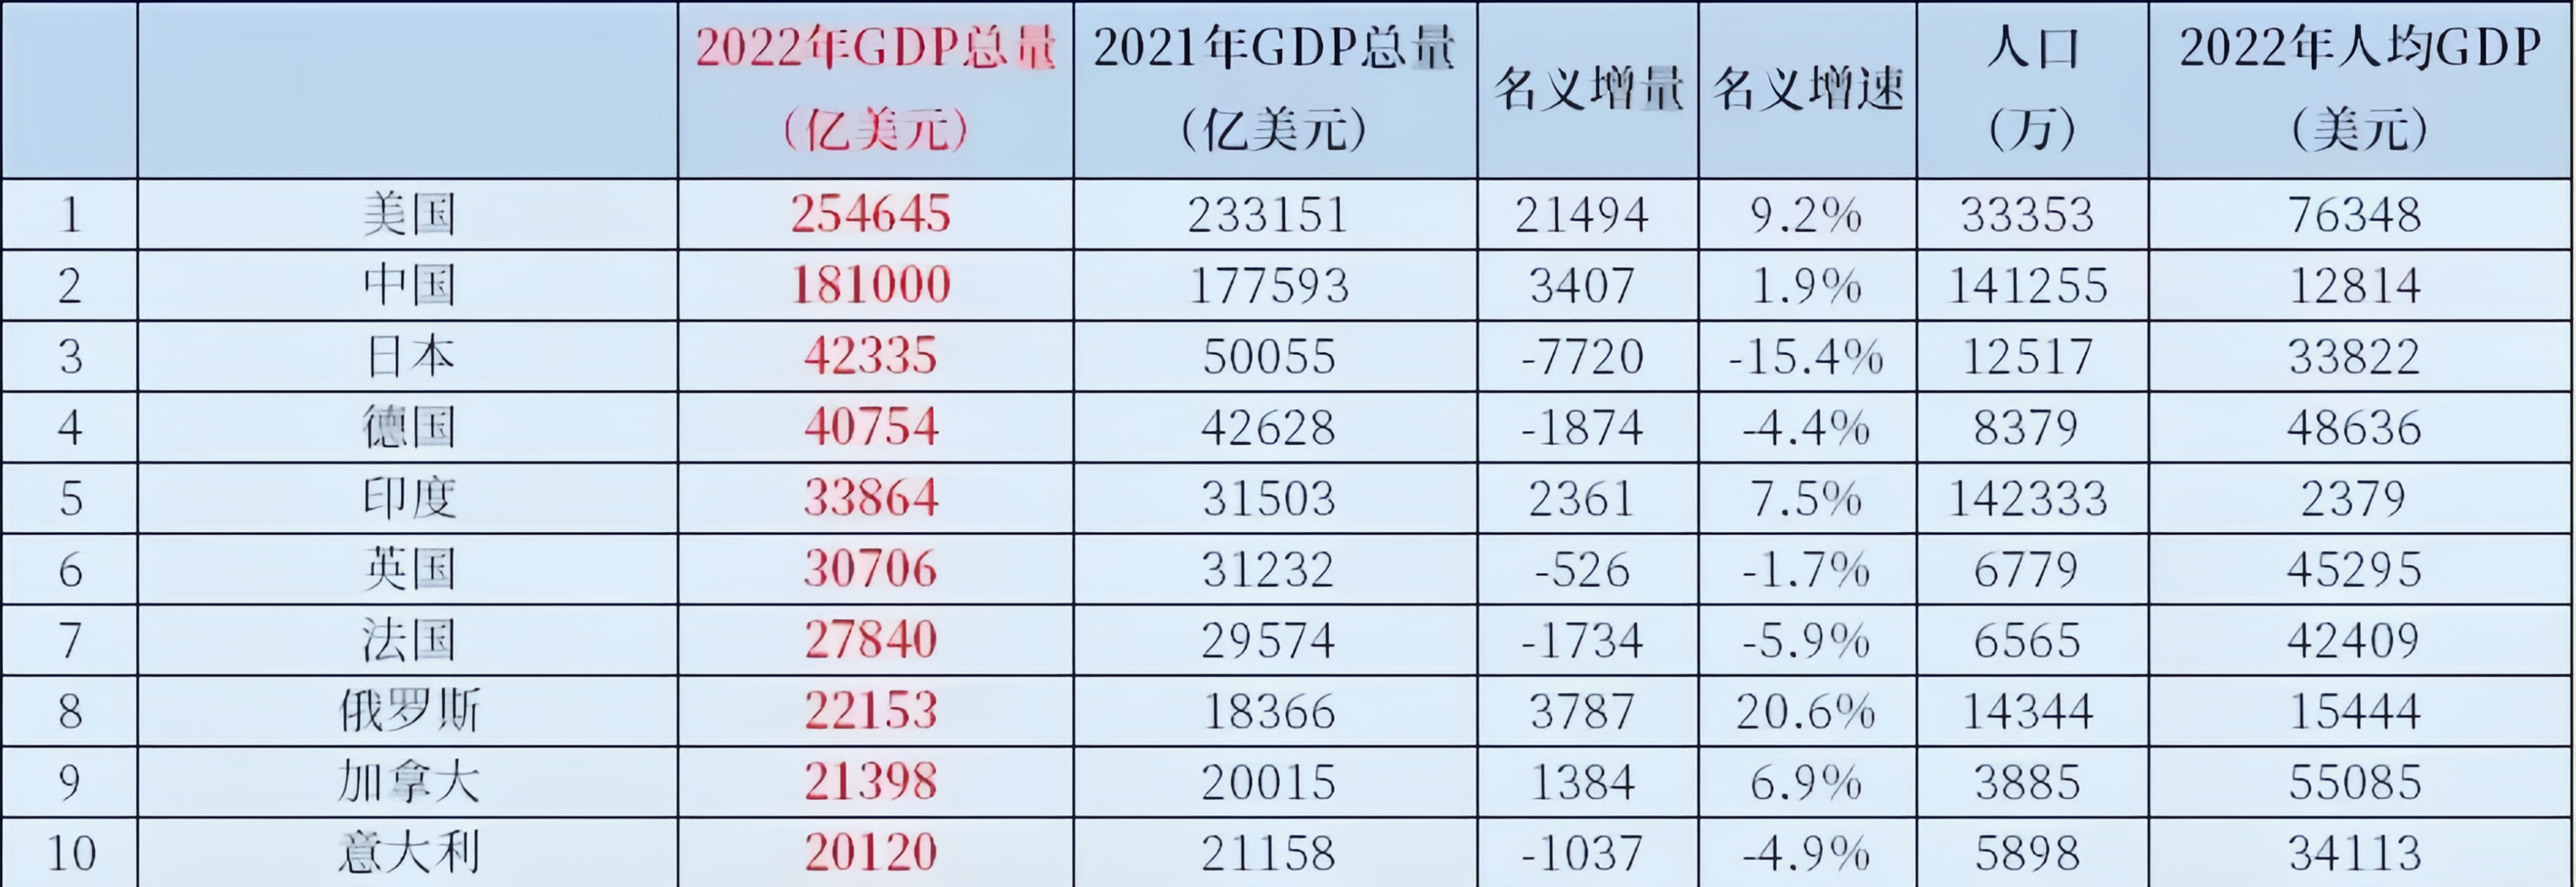 2020年GDP世界排名图片